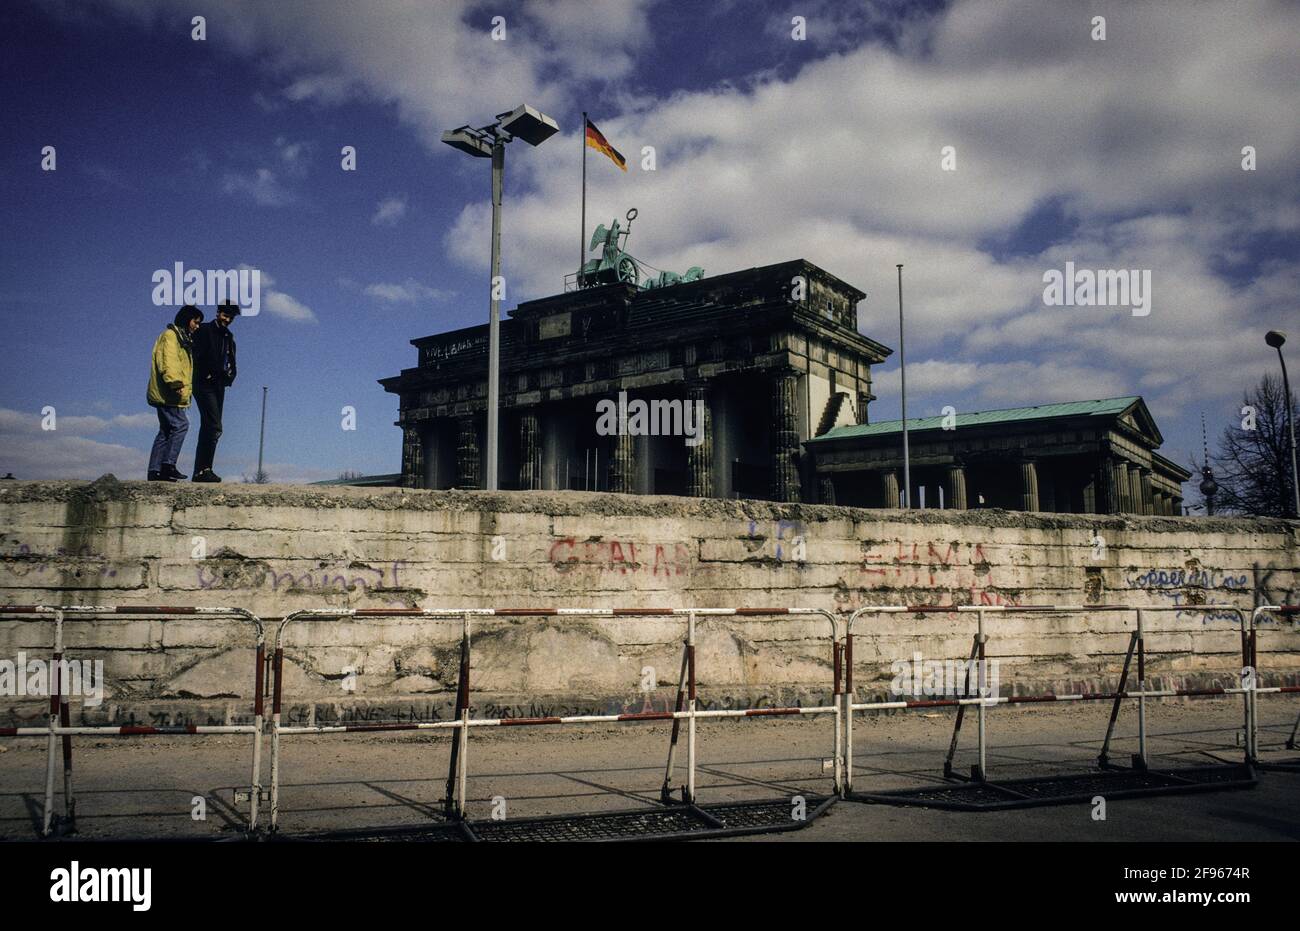 Zwei Touristen gehen am Brandenburger Tor auf dem Rest der Berliner Mauer spazieren - two tourists take a stroll on the remains of the Berlin Wall at the Brandenburg Gate. Stock Photo